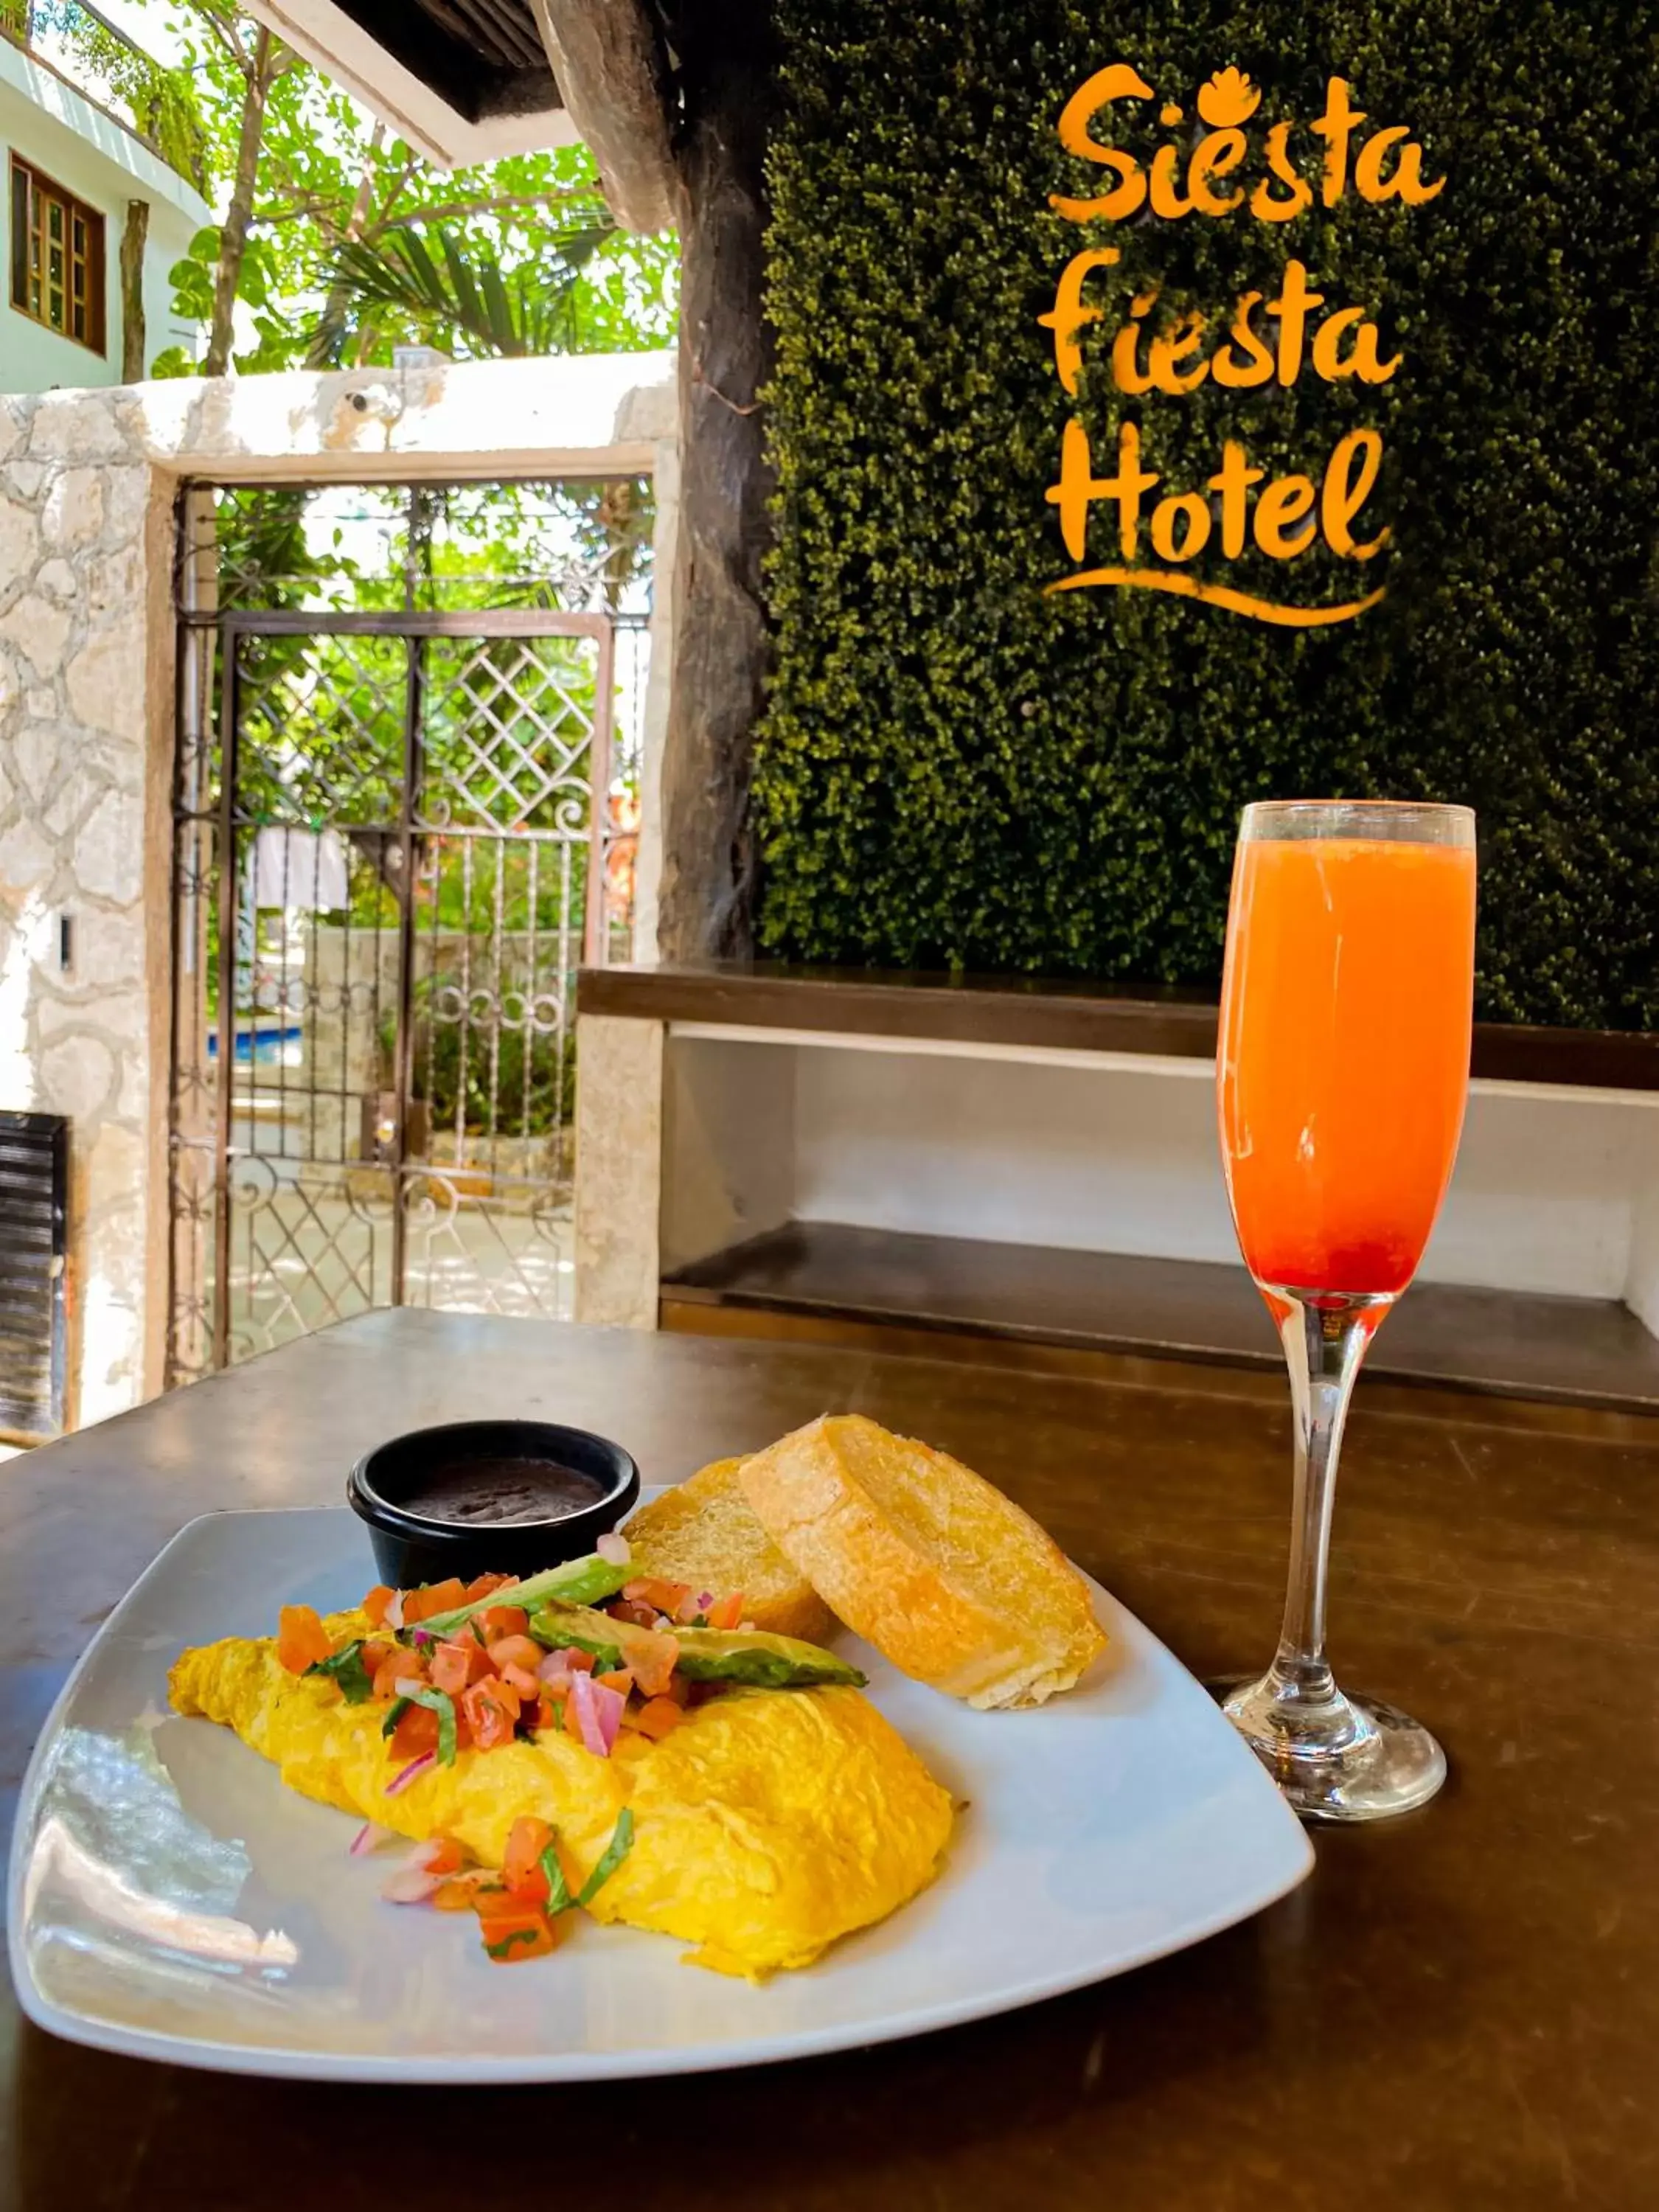 Breakfast in Siesta Fiesta Hotel - 5th Avenue